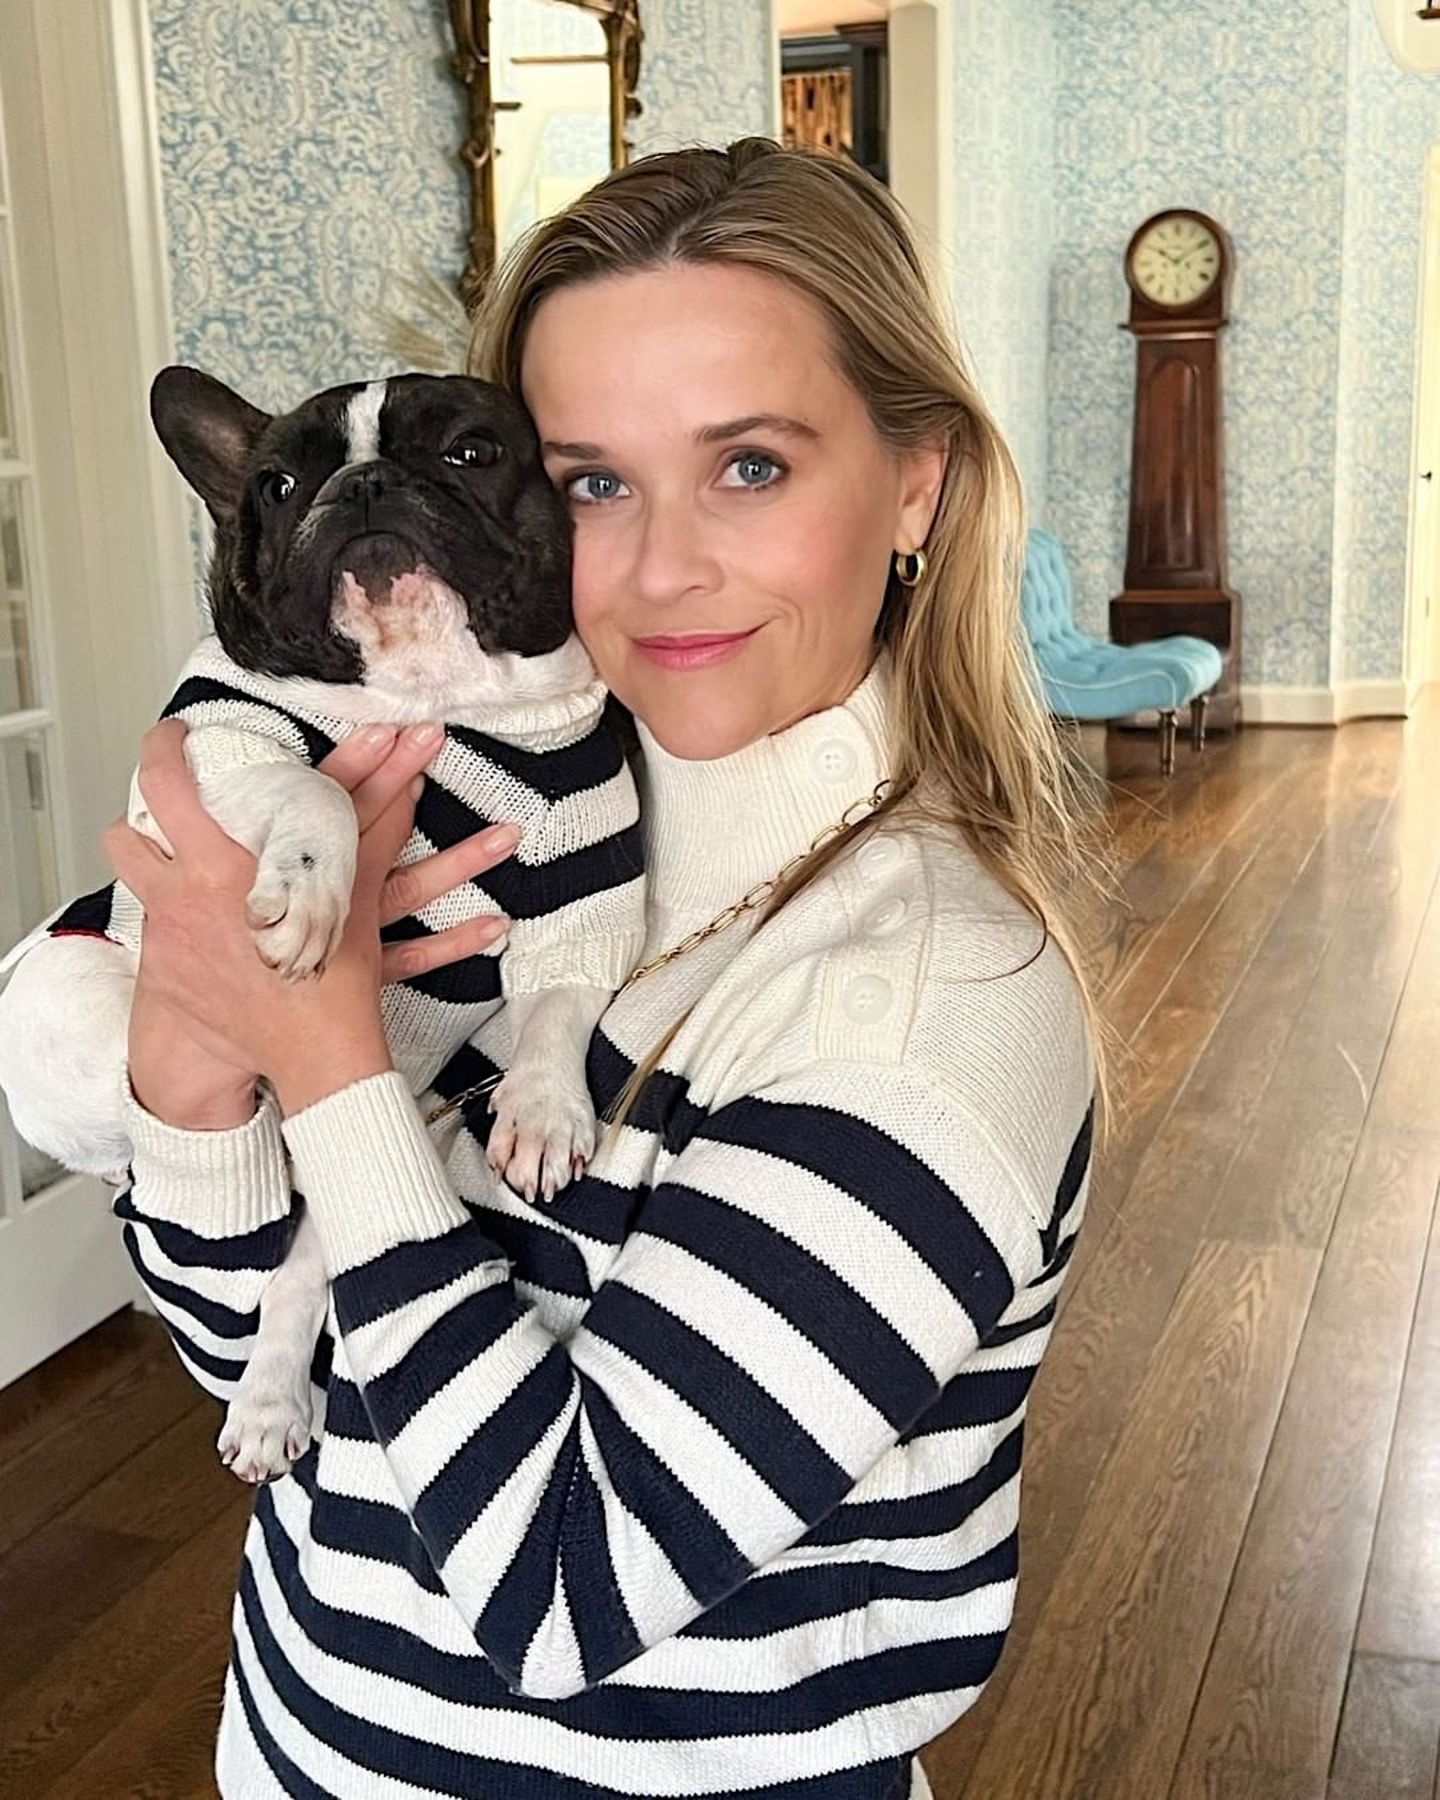 Ganz klar! Reese Witherspoon und ihre Frenchie-Dame Minnie gehören zusammen. Und um das zu unterstreichen, tragen die beiden sogar ihre Strickpullis im schwarz-weiß gestreiften Partnerlooks.